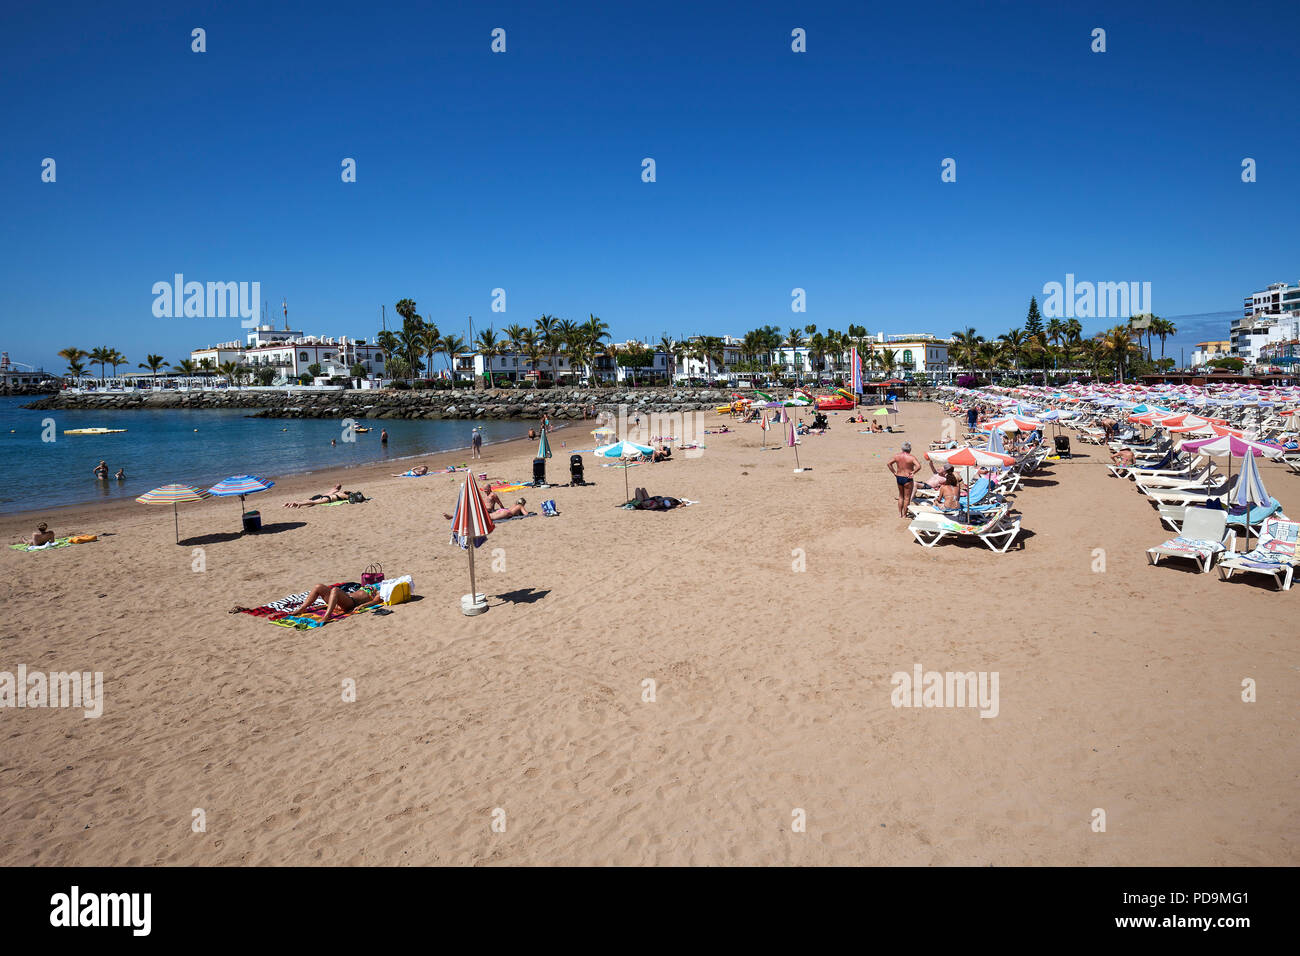 Plage de sable fin, Puerto de Mogan, Grande Canarie, Îles Canaries, Espagne Banque D'Images